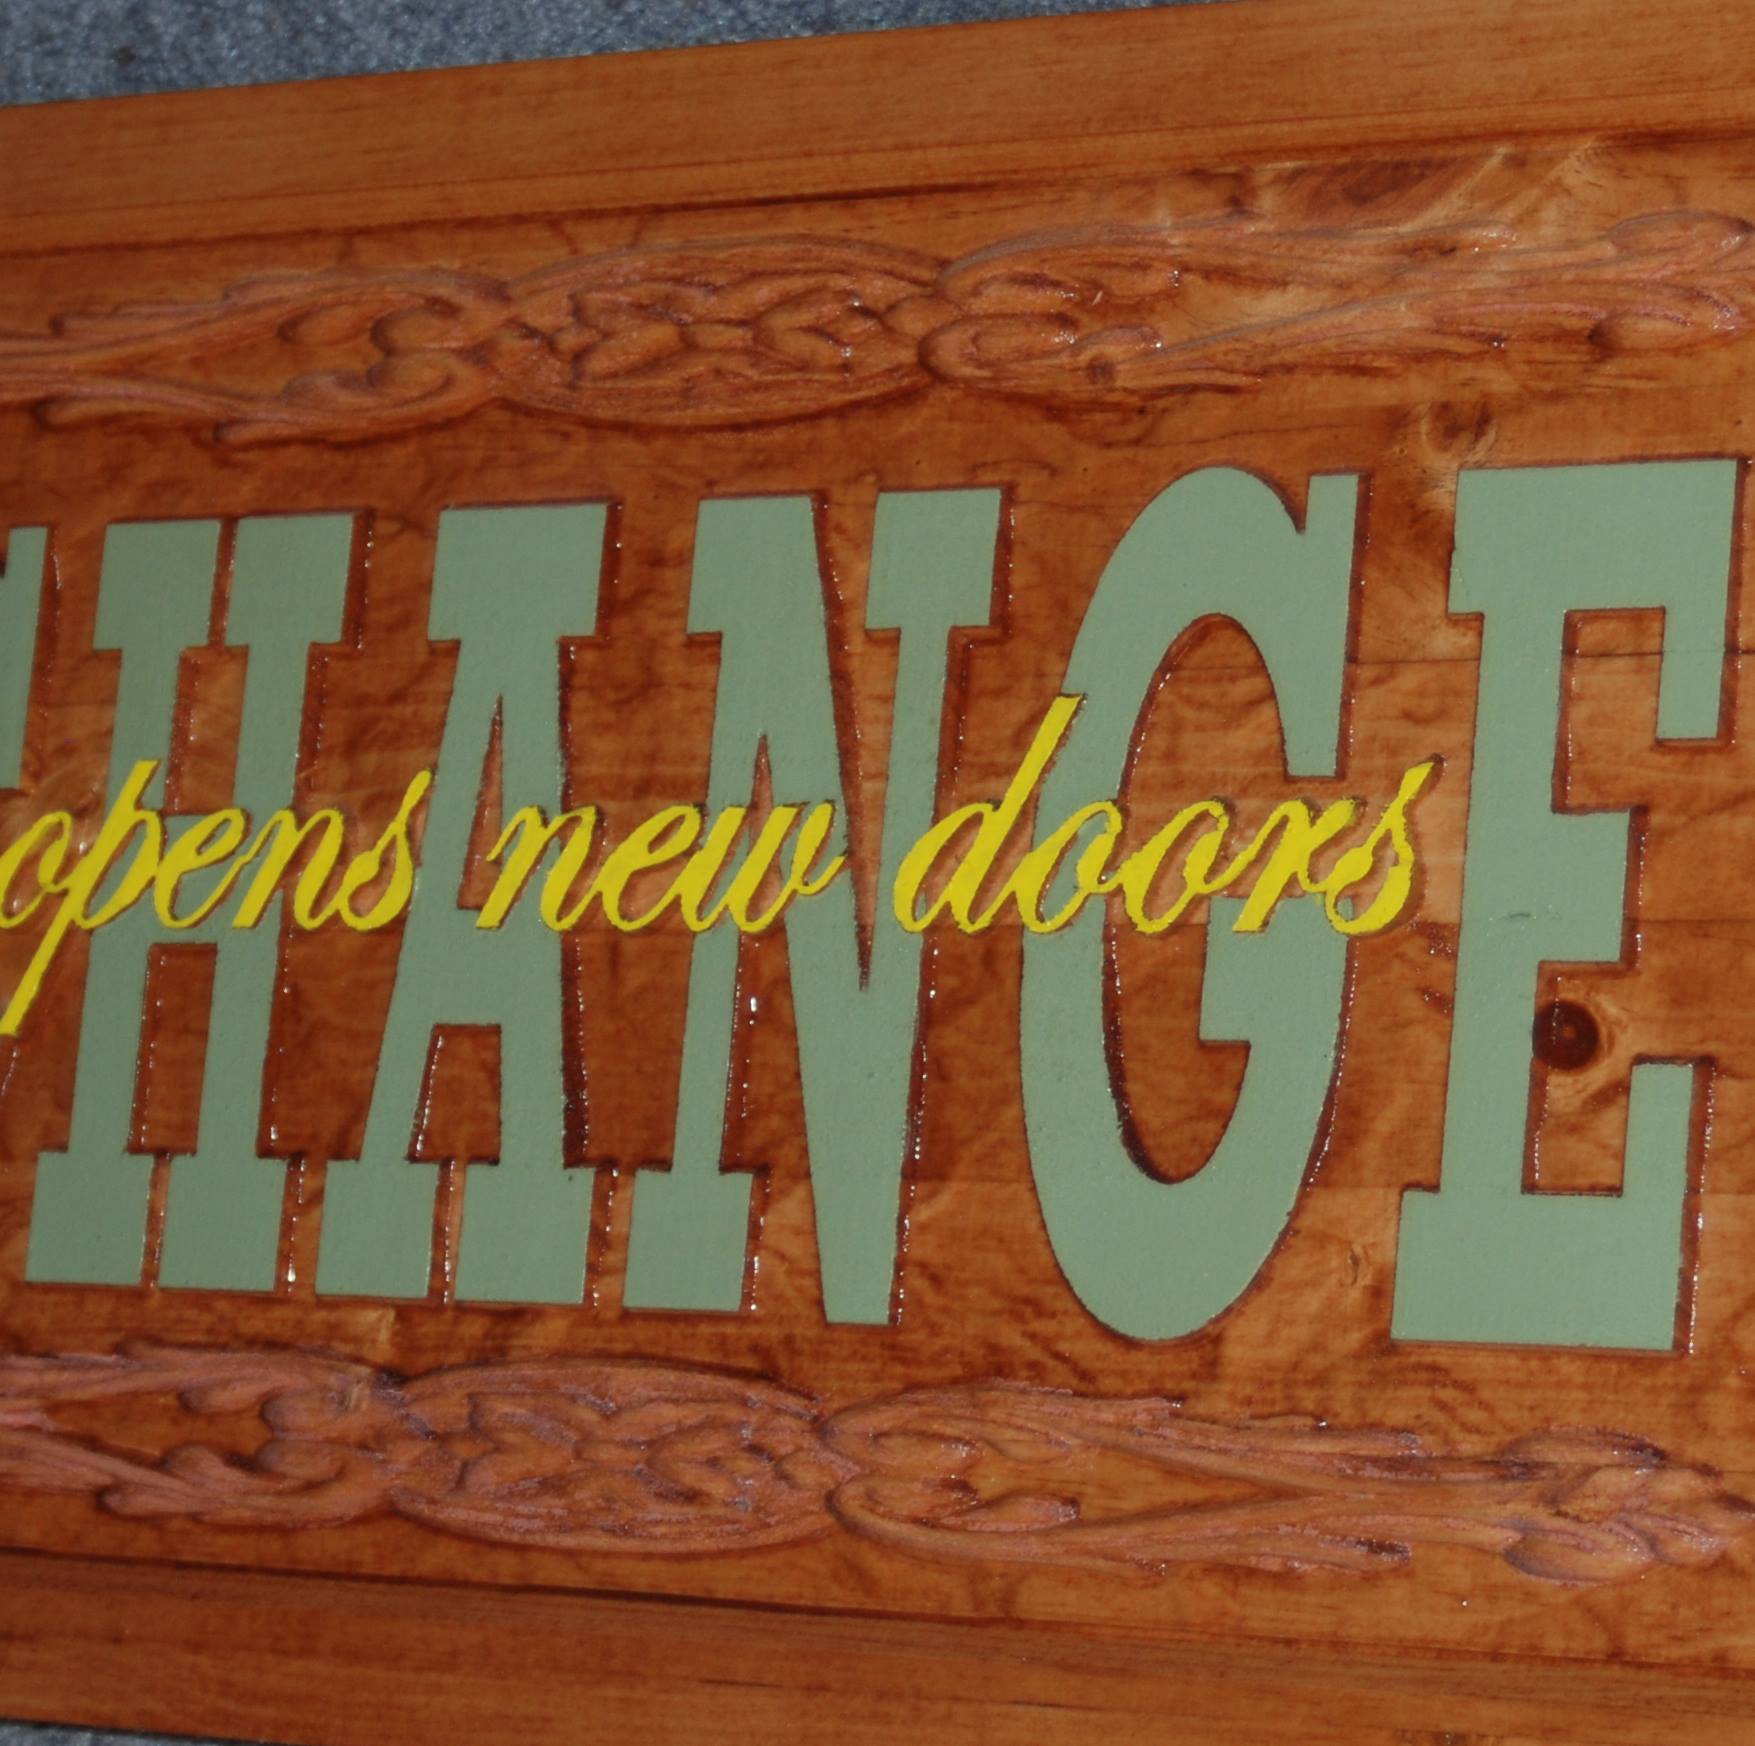 CHANGE opens new doors